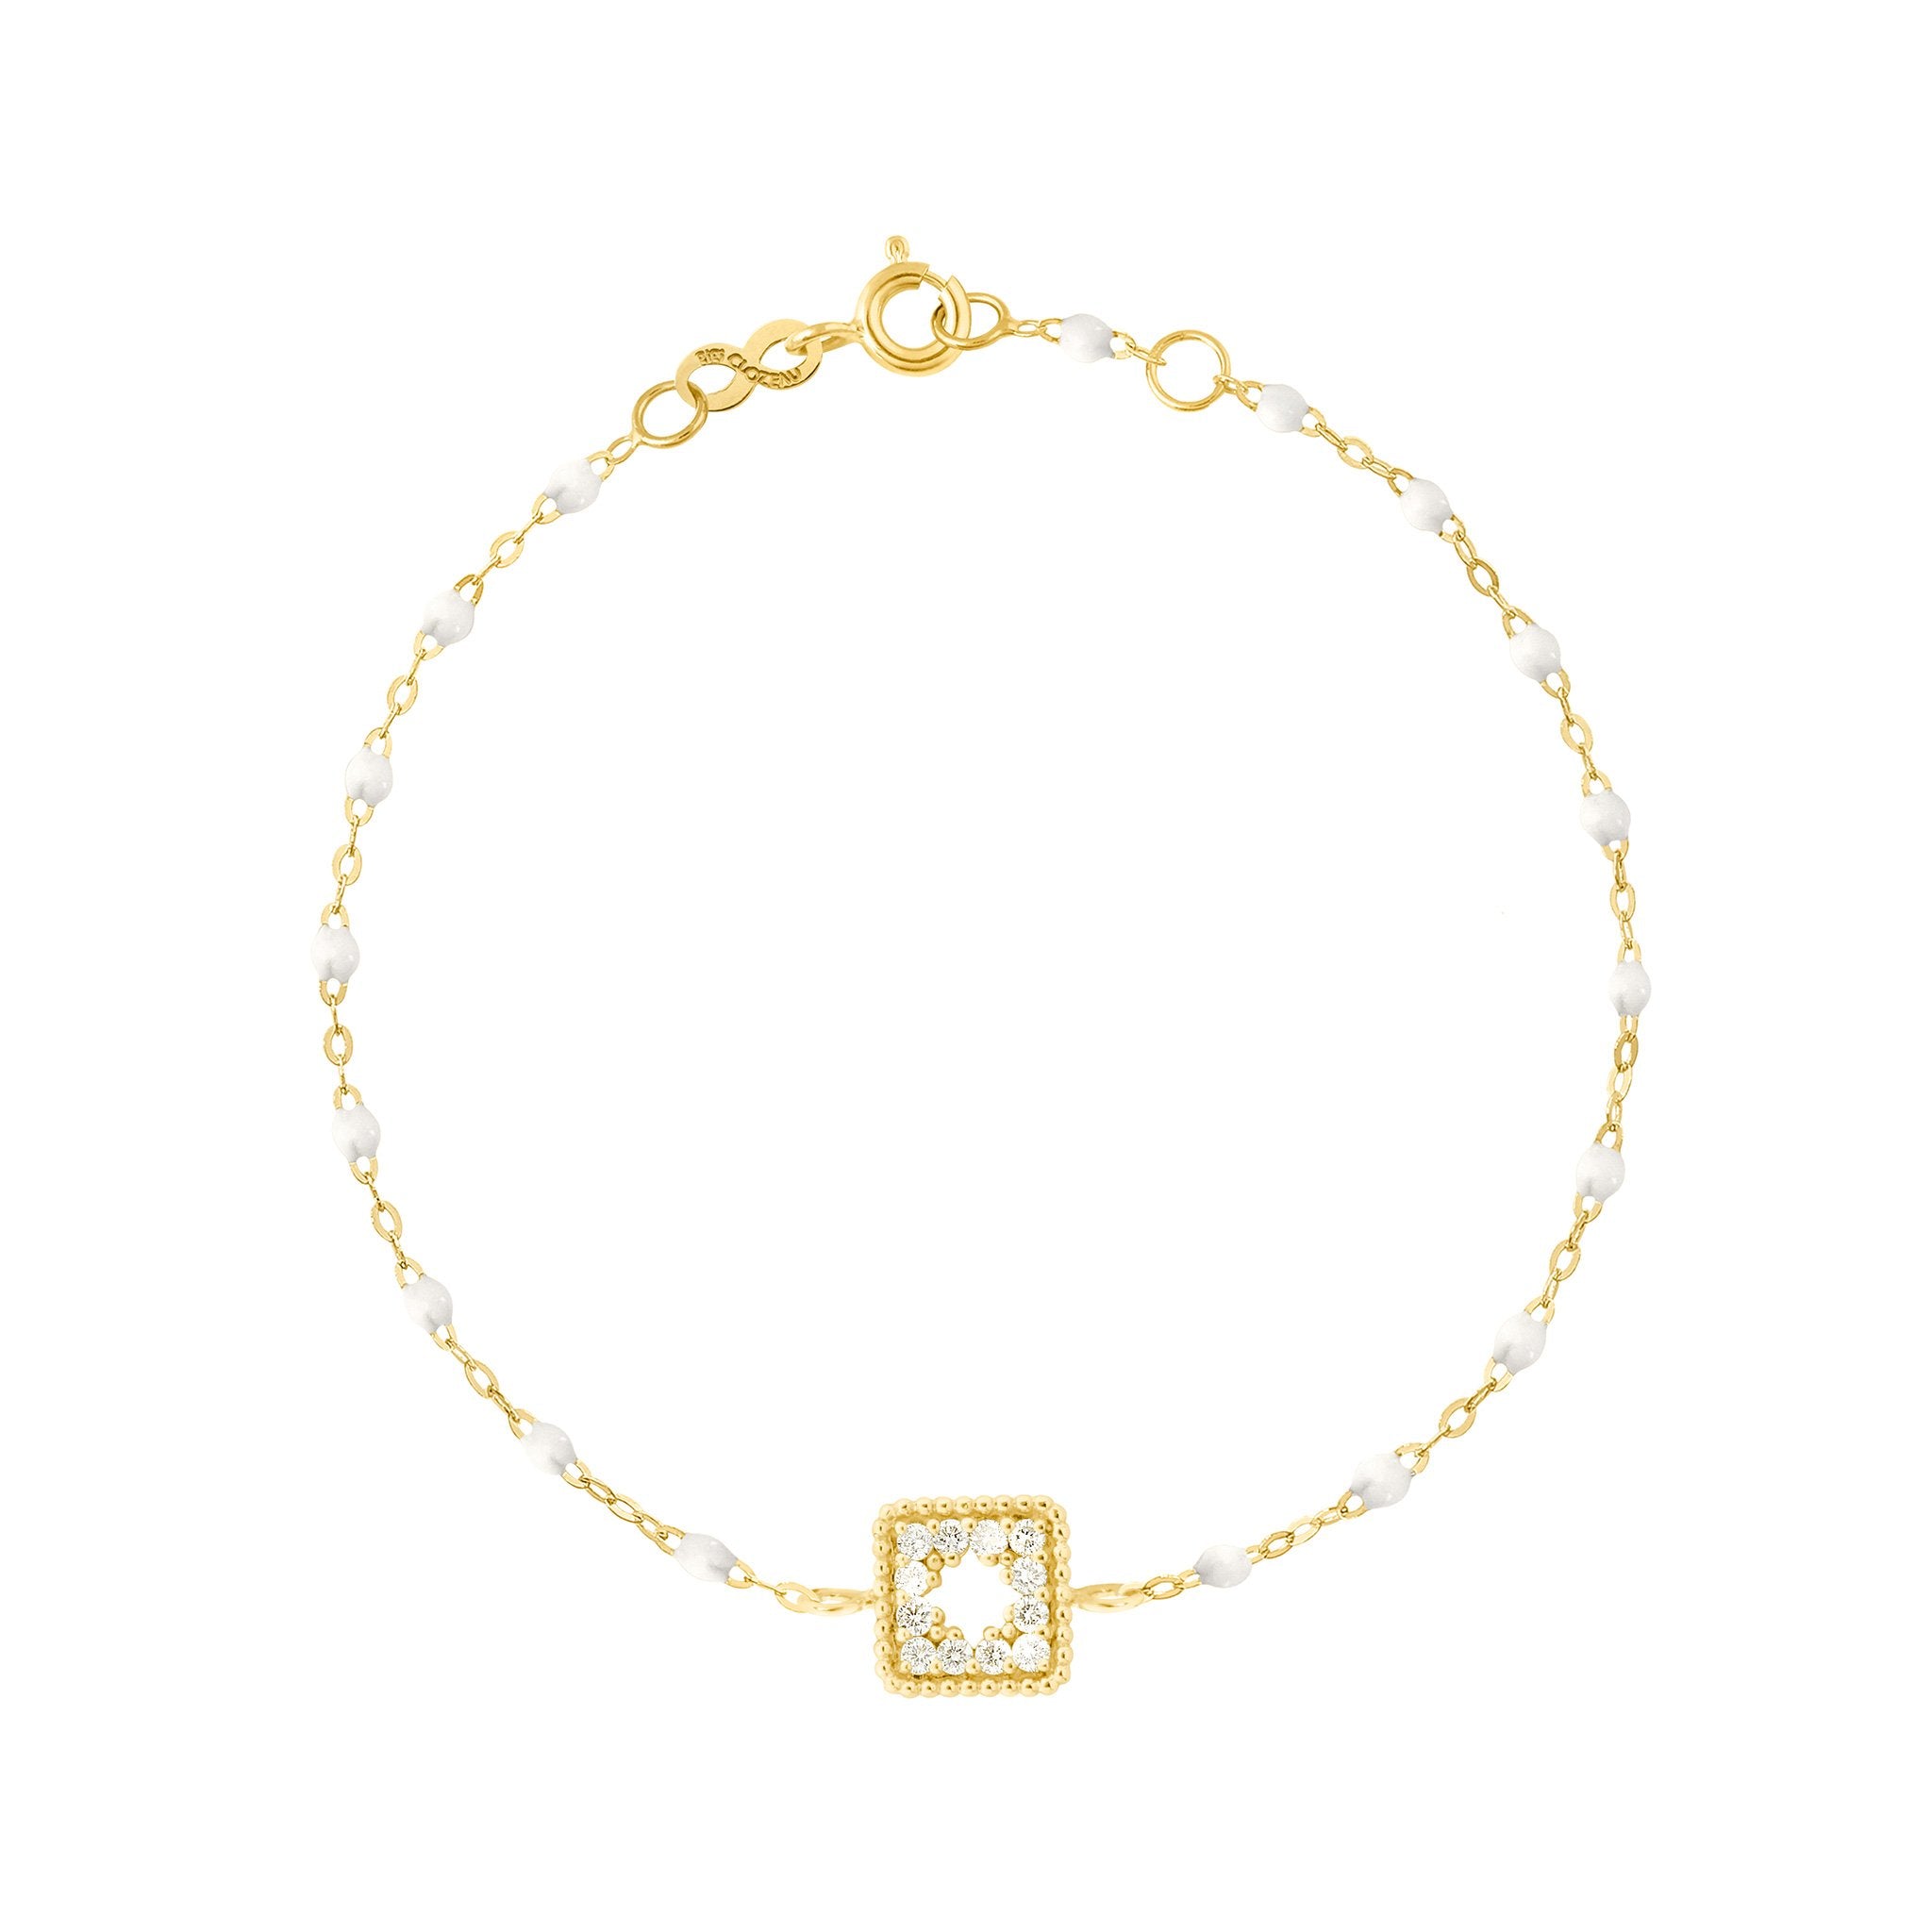 Bracelet blanc Trésor, diamants, or jaune, 17 cm pirate Référence :  b3tr001j0117di -1